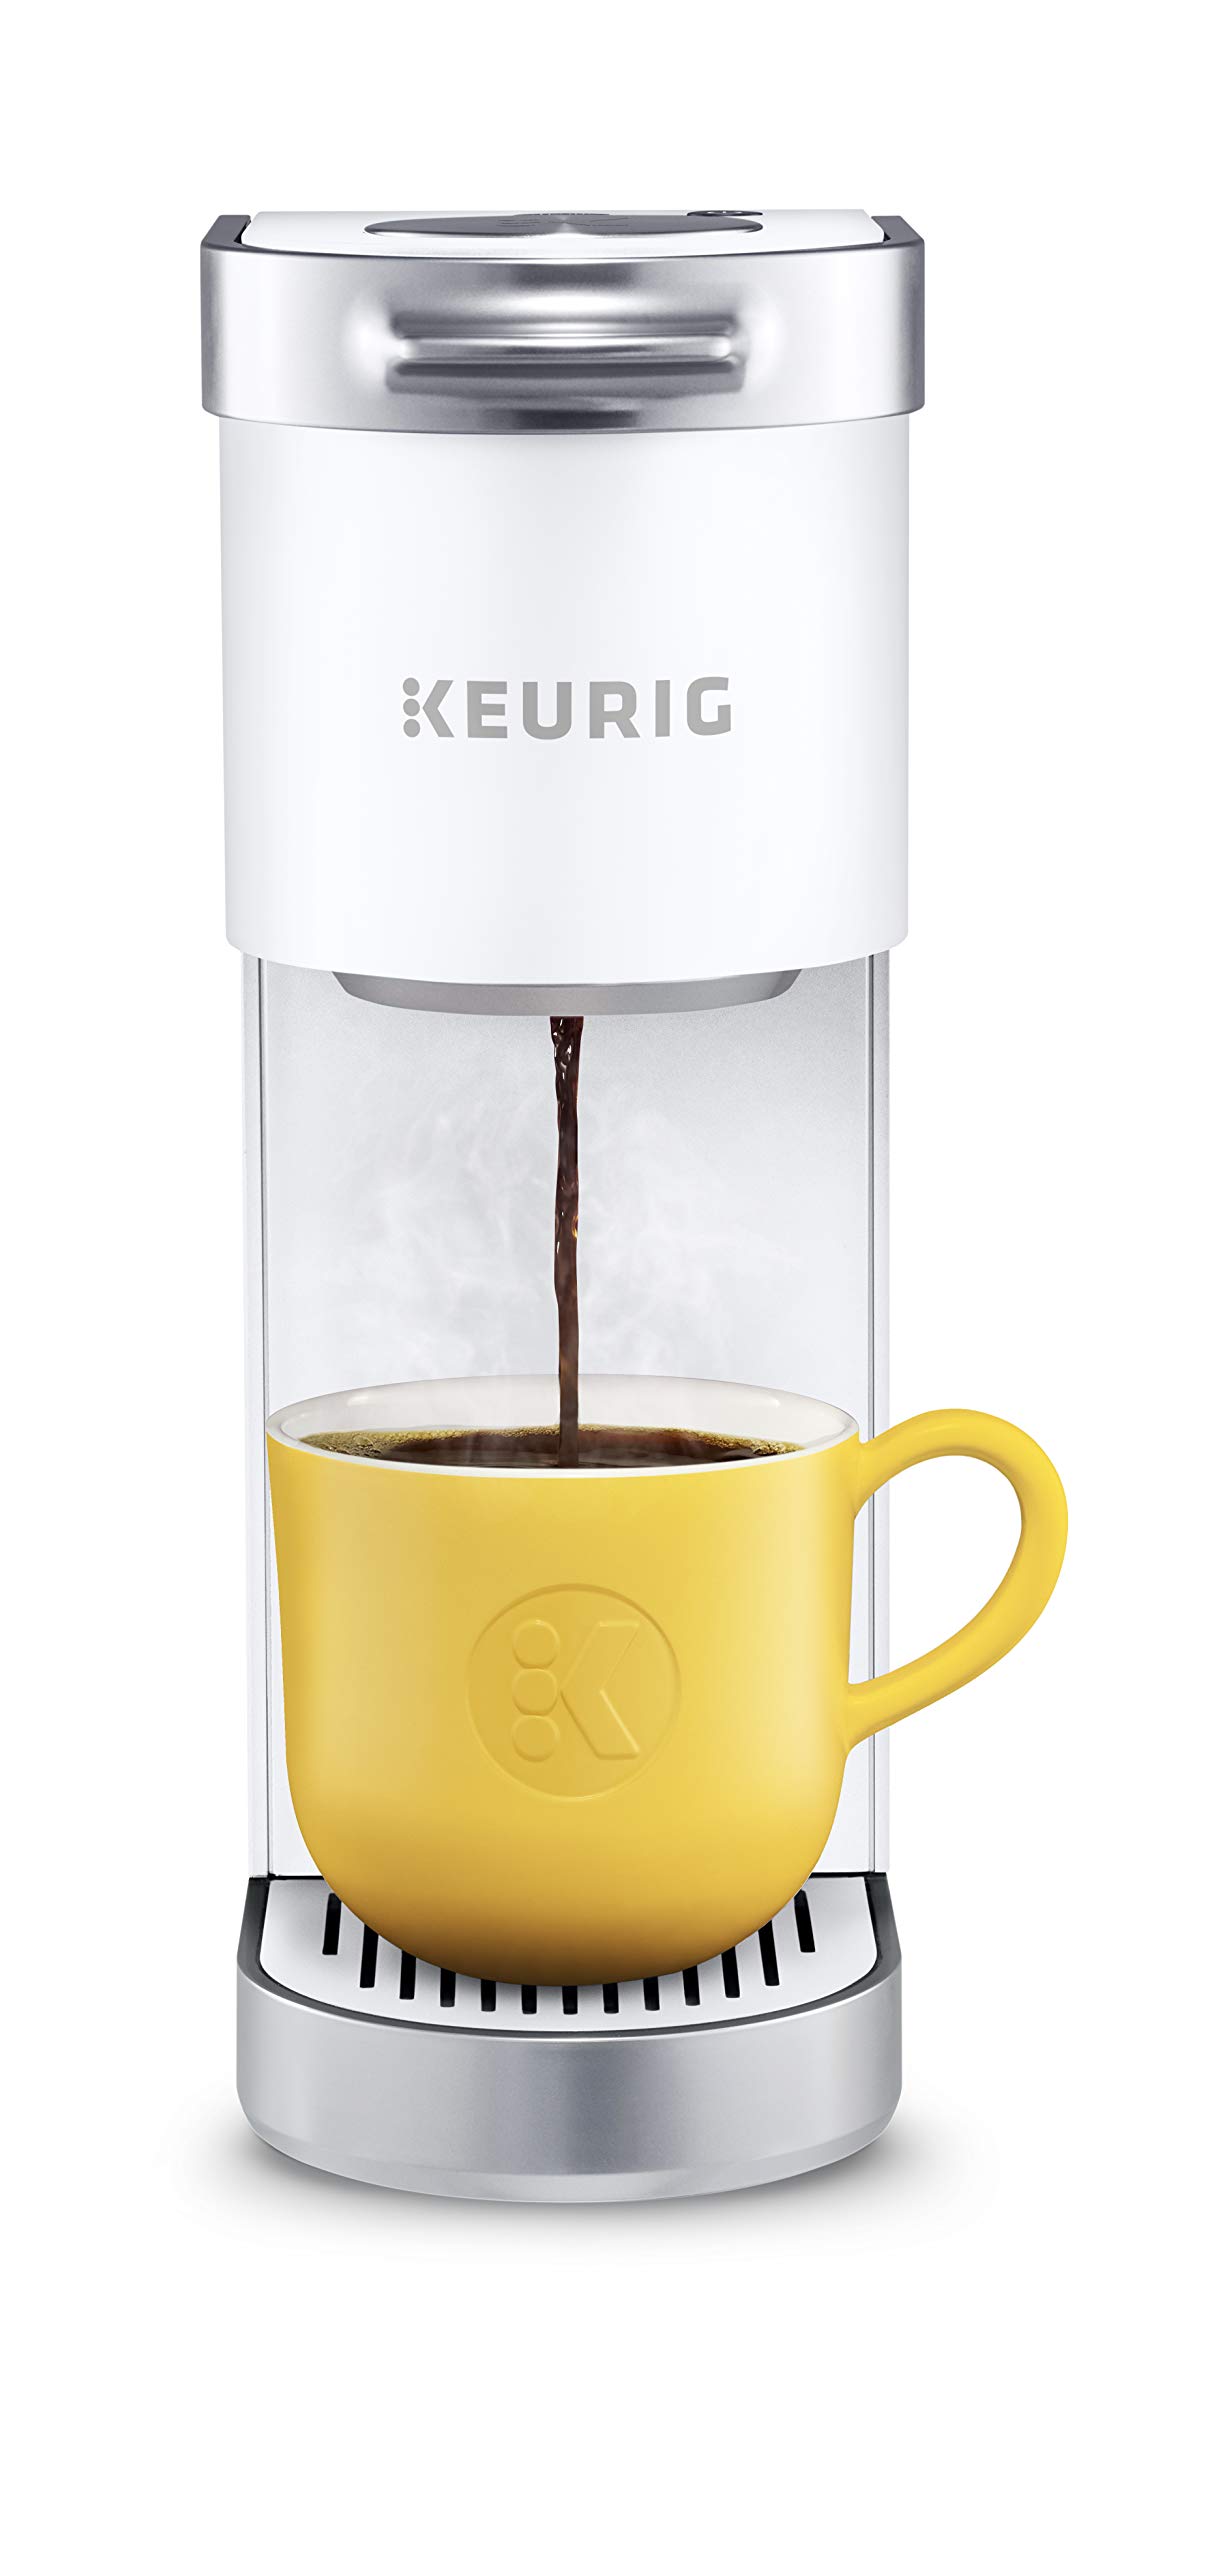 Keurig K-Mini Plus シングルサーブ K-カップ ポッドコーヒーメーカー、マットホワイト